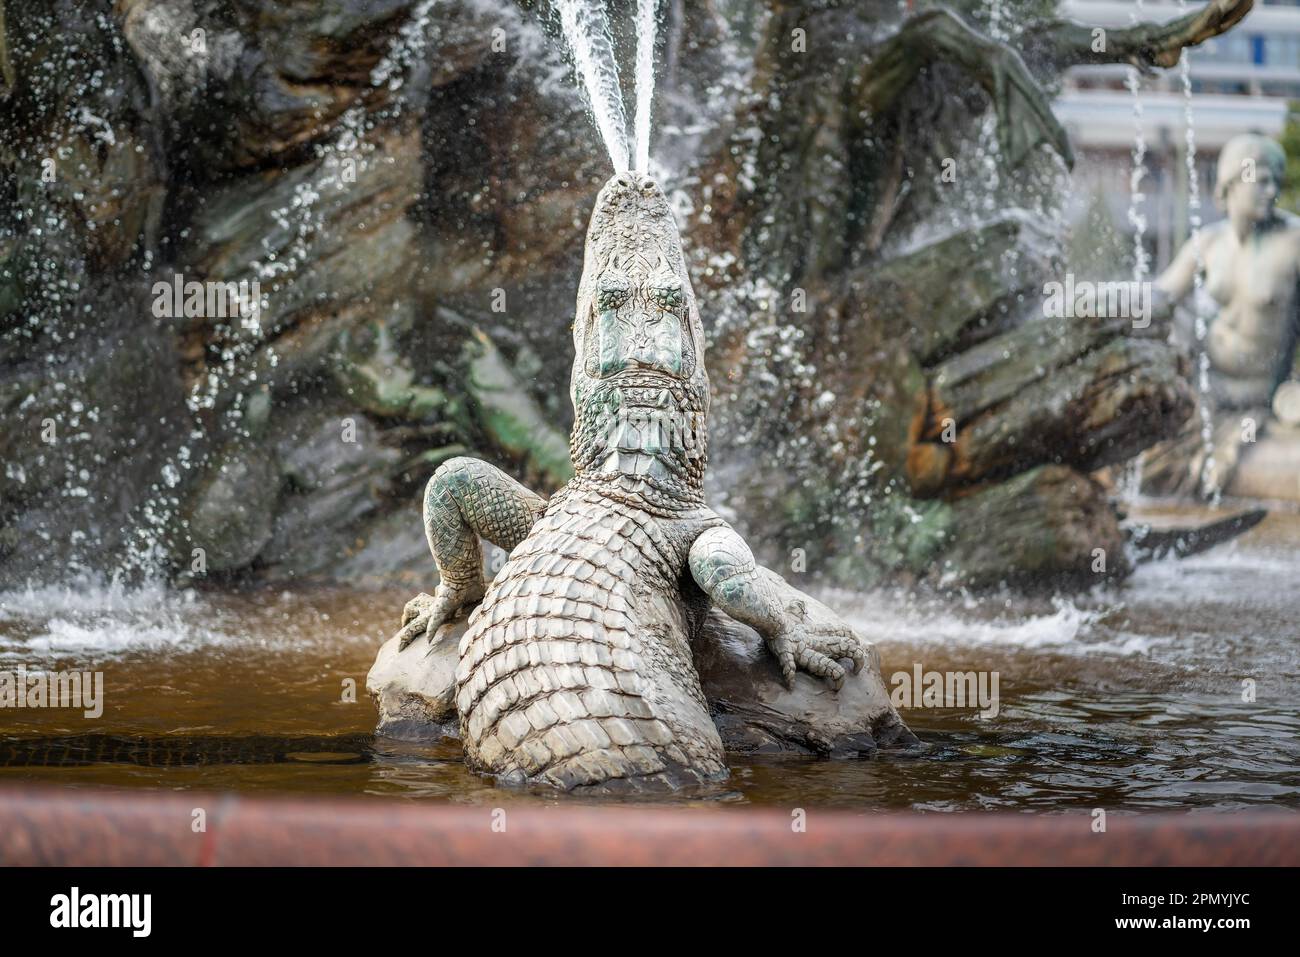 Détail de la sculpture crocodile à la fontaine Neptune (fontaine conçue par Reinhold Begas en 1891) - Berlin, Allemagne Banque D'Images